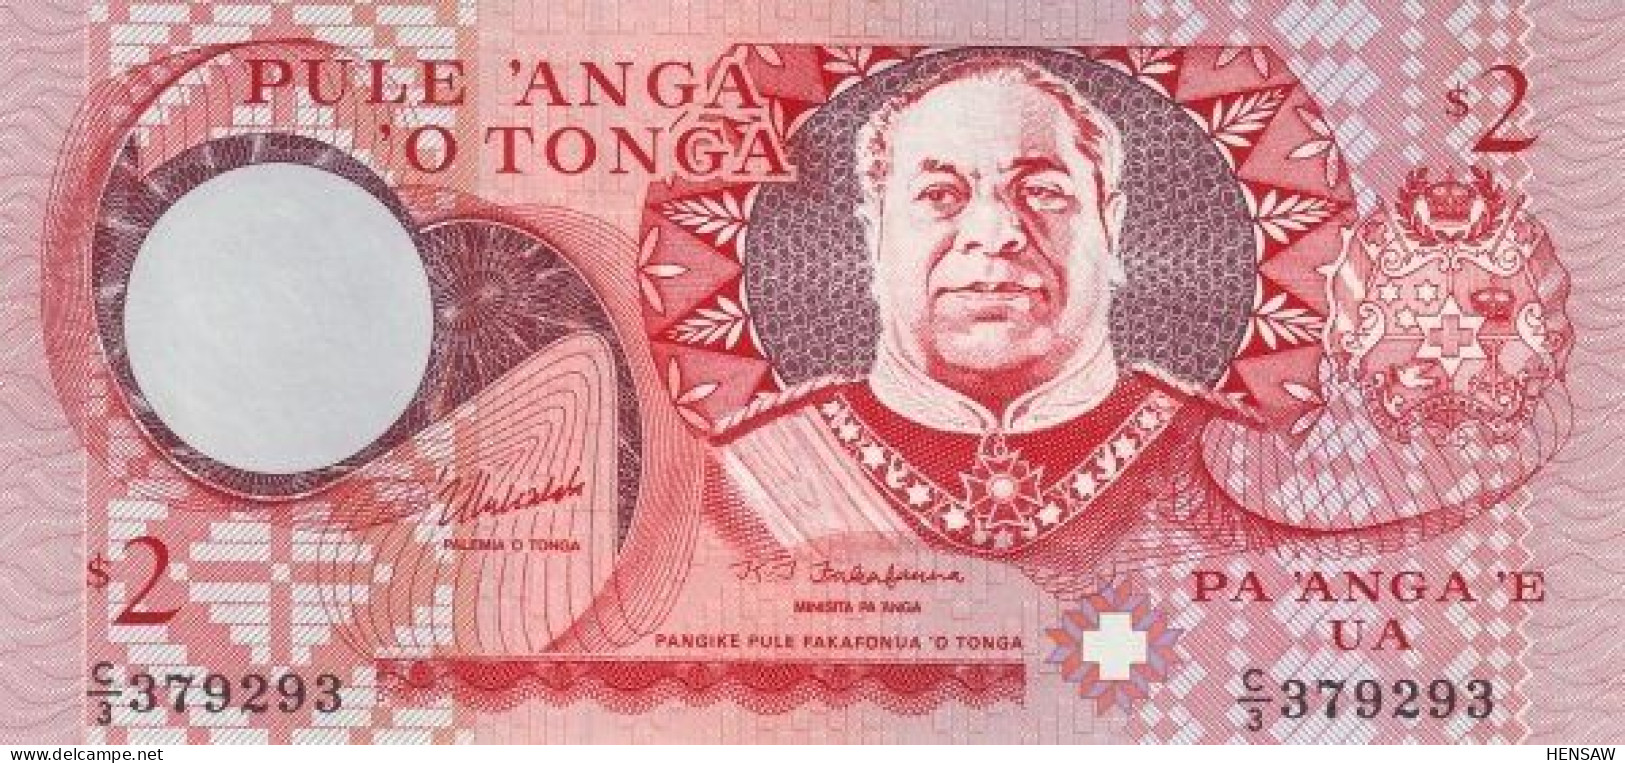 TONGA 2 PA'ANGA P 32c 1995 UNC NUEVO NEW - Tonga